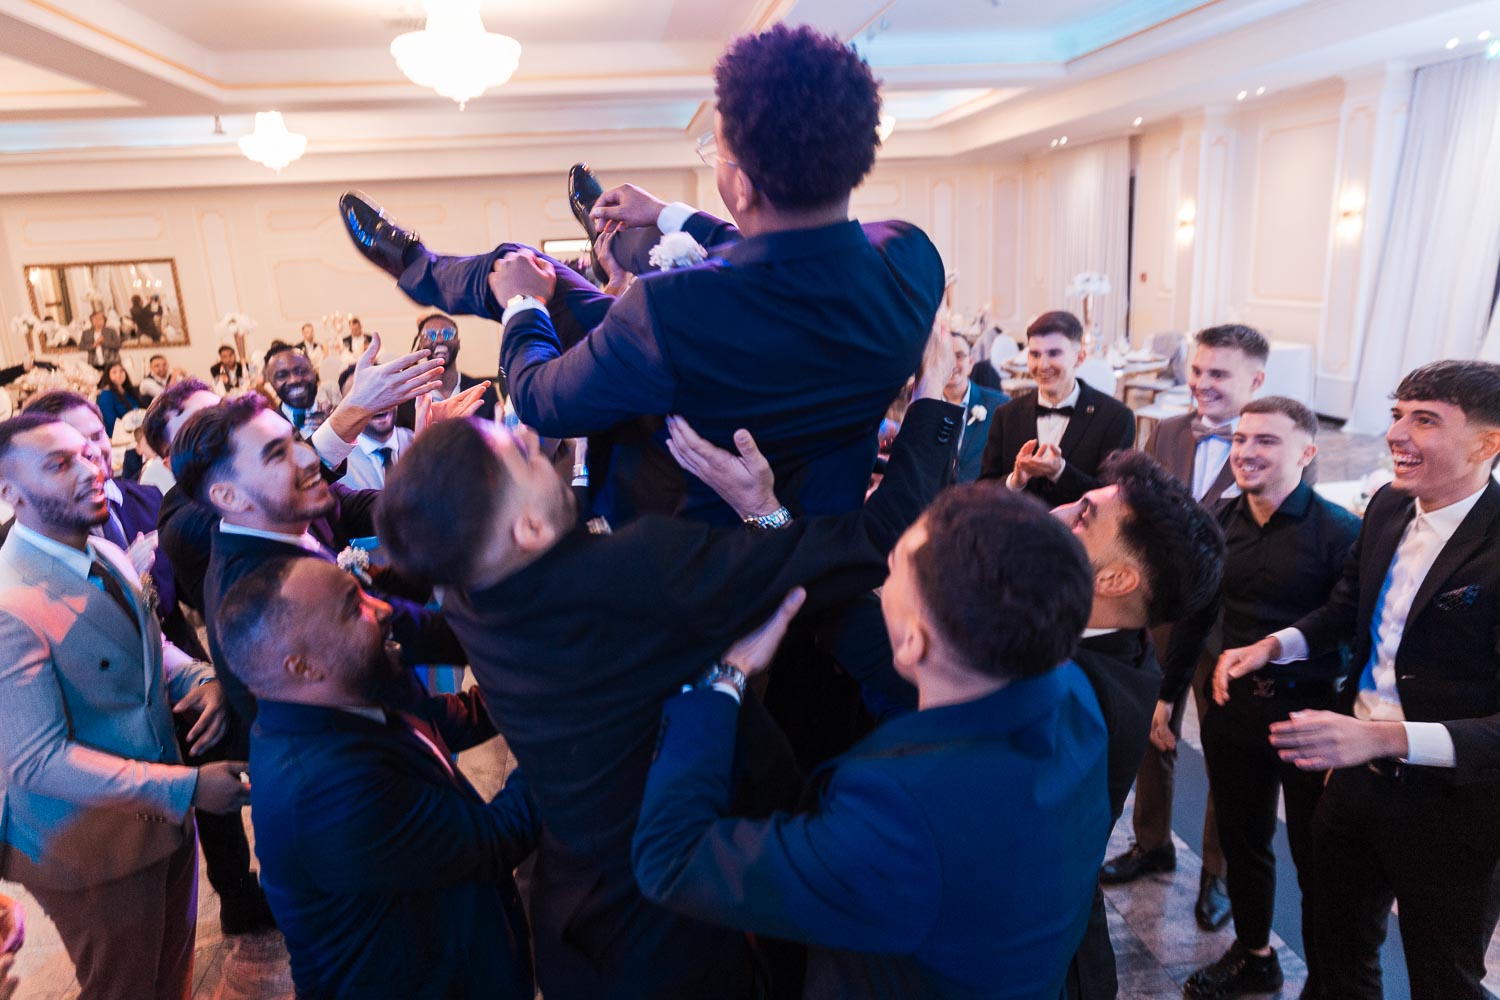 Ein somalischer Bräutigam wird von seinen Bestmen in die Luft geworfen, während im Hintergrund andere Gäste sich bei einer Hochzeit im Event Palast Hürth amüsieren.